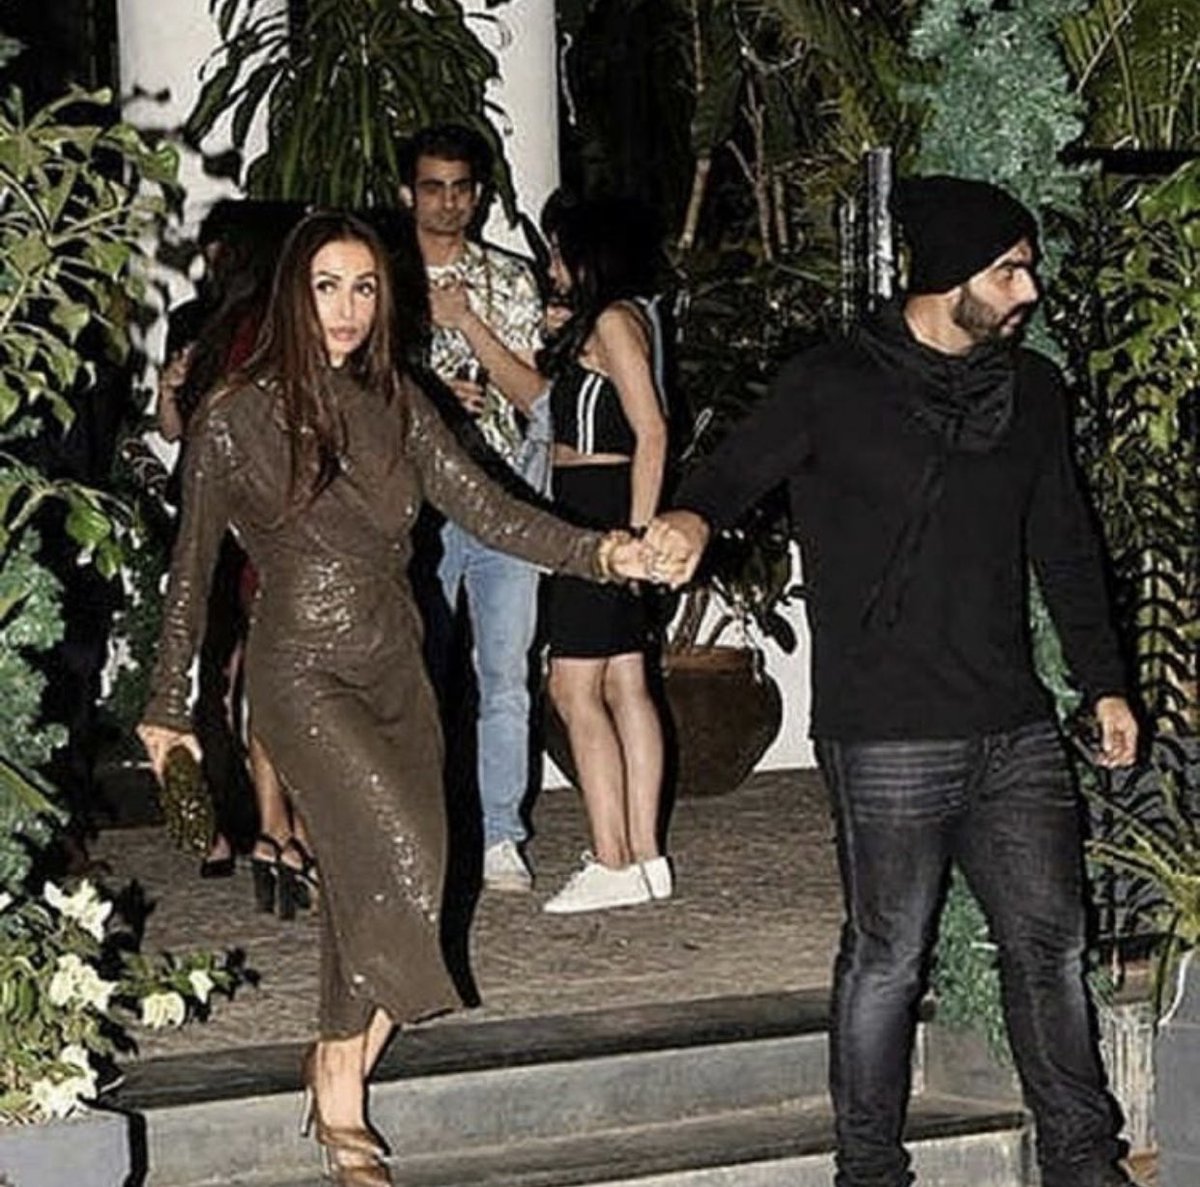 Arjun Kapoor and Malaika Arora spotted at a dinner date last night.
#Bollywood #HotCouple #ArjunKapoor #MalaikaAarora #DinnerDate